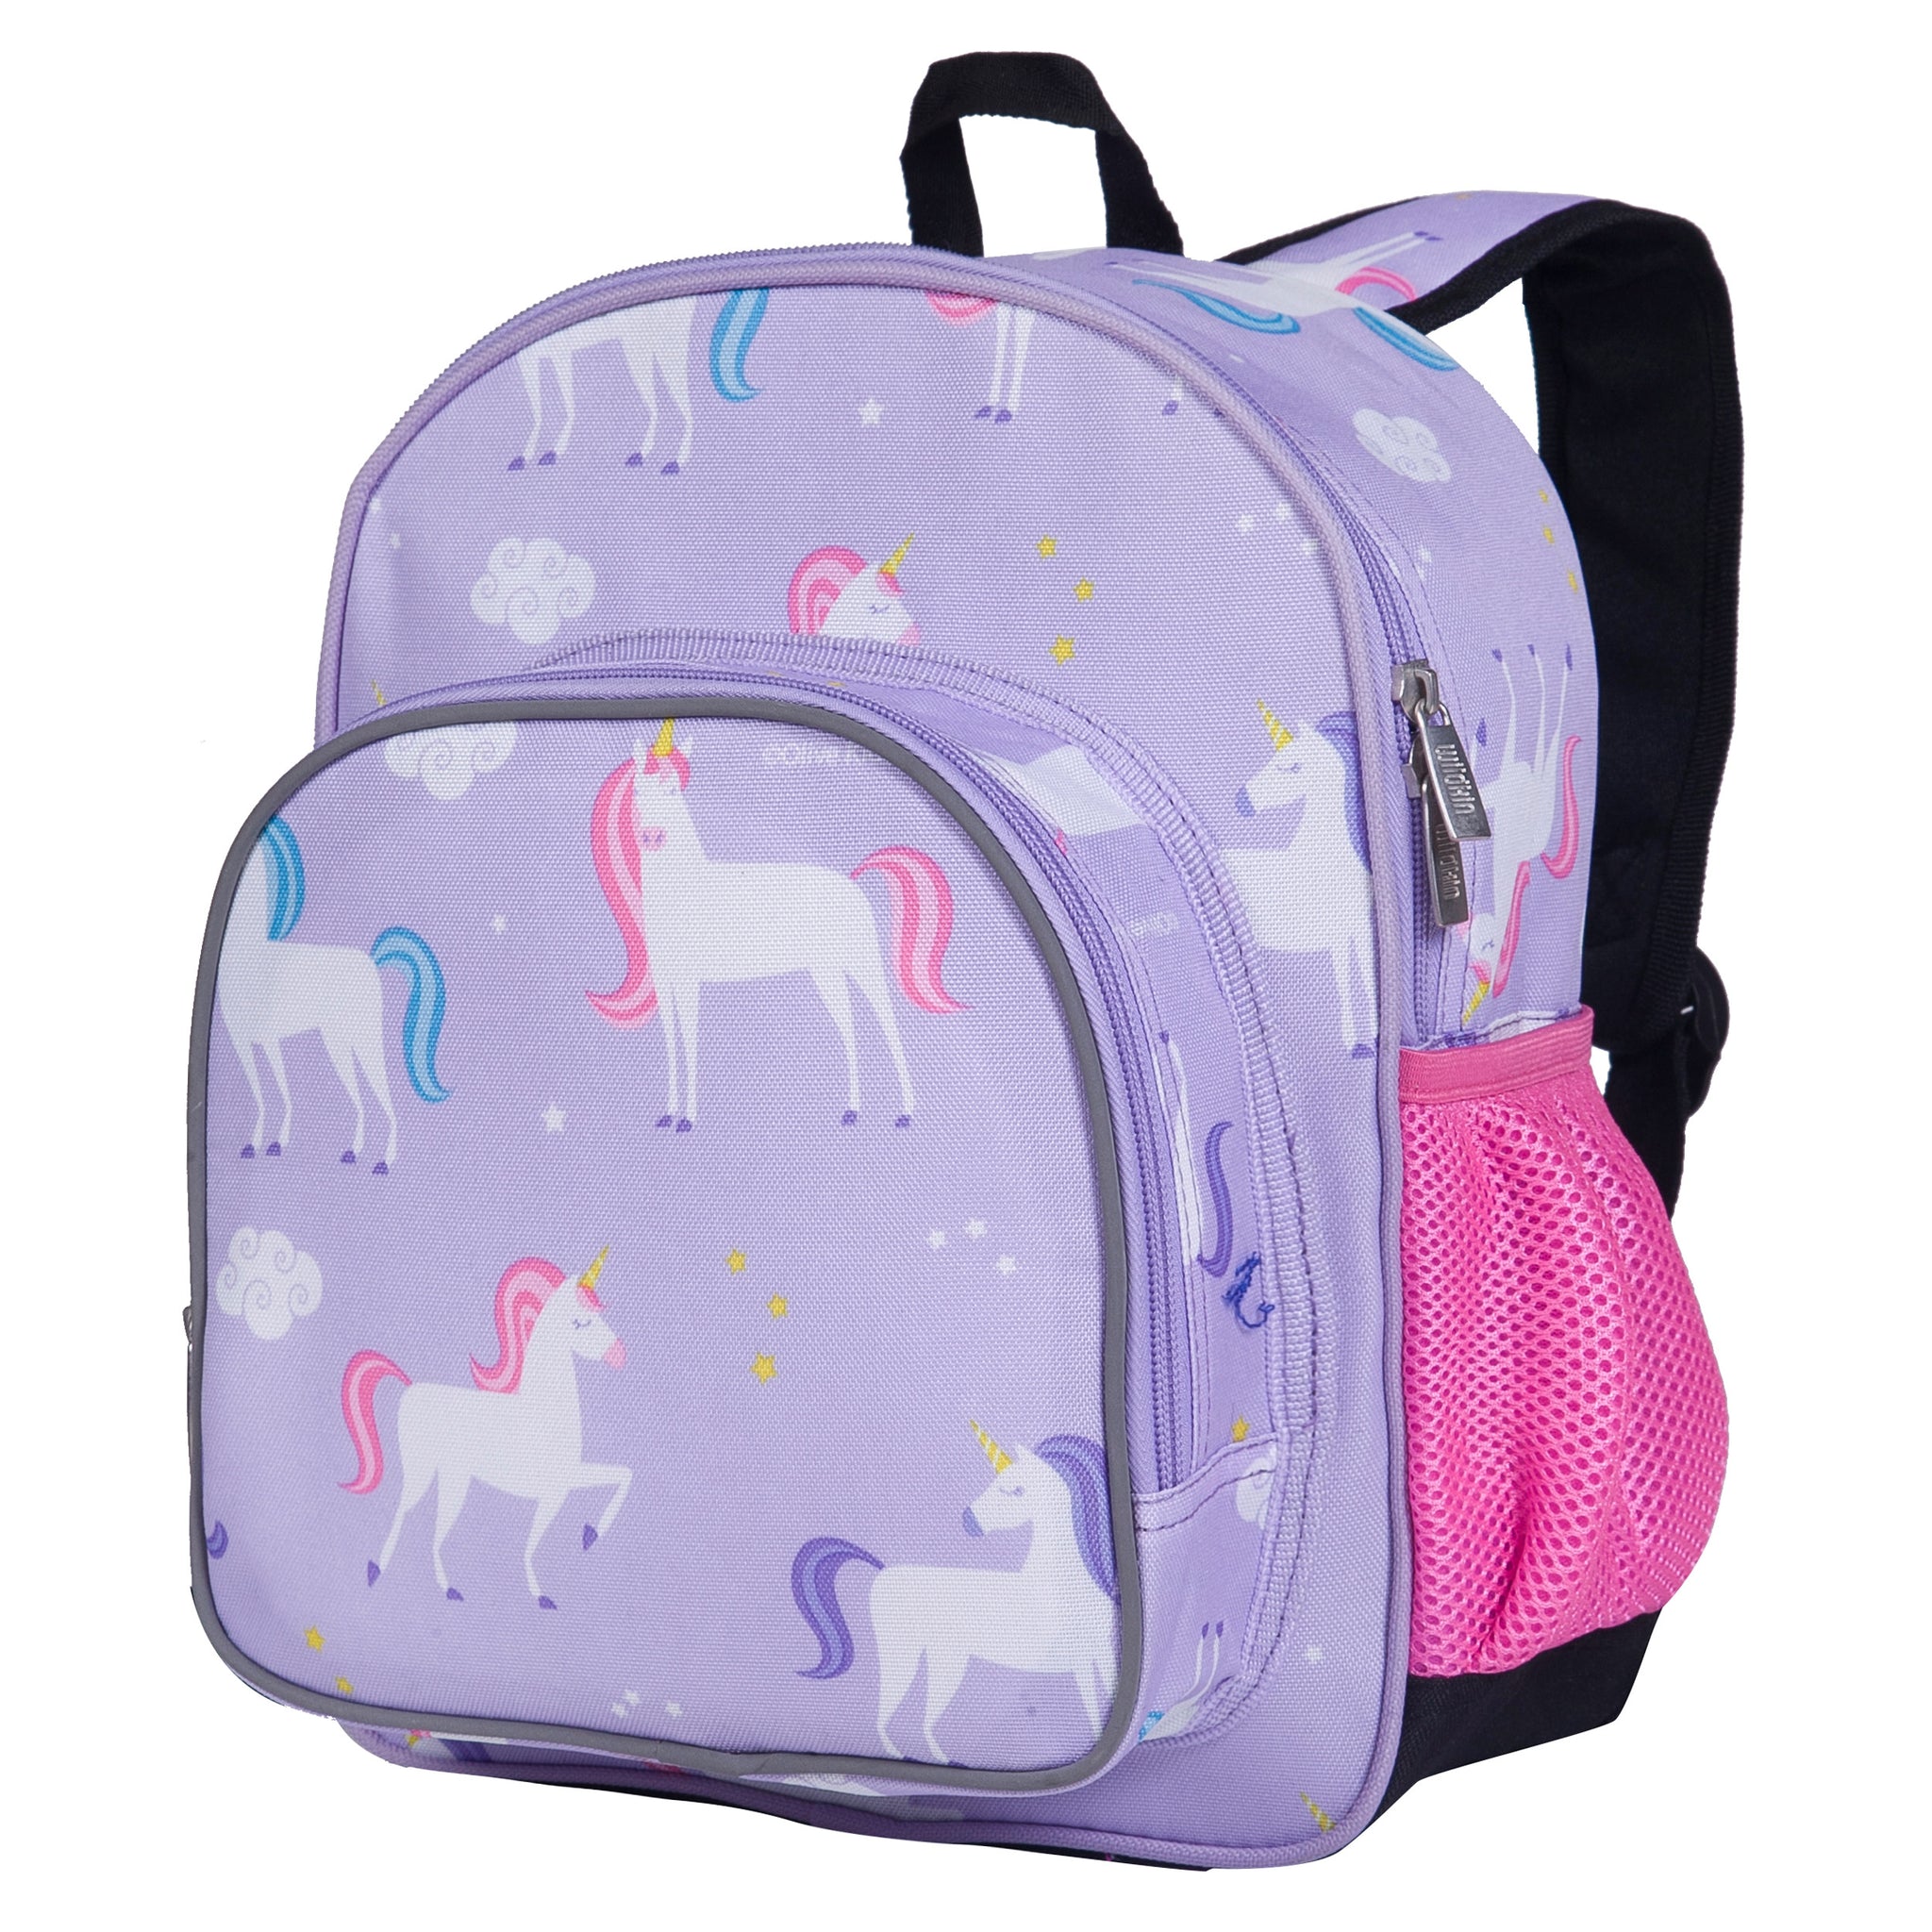 Wildkin - Unicorn Backpack - 12 inch